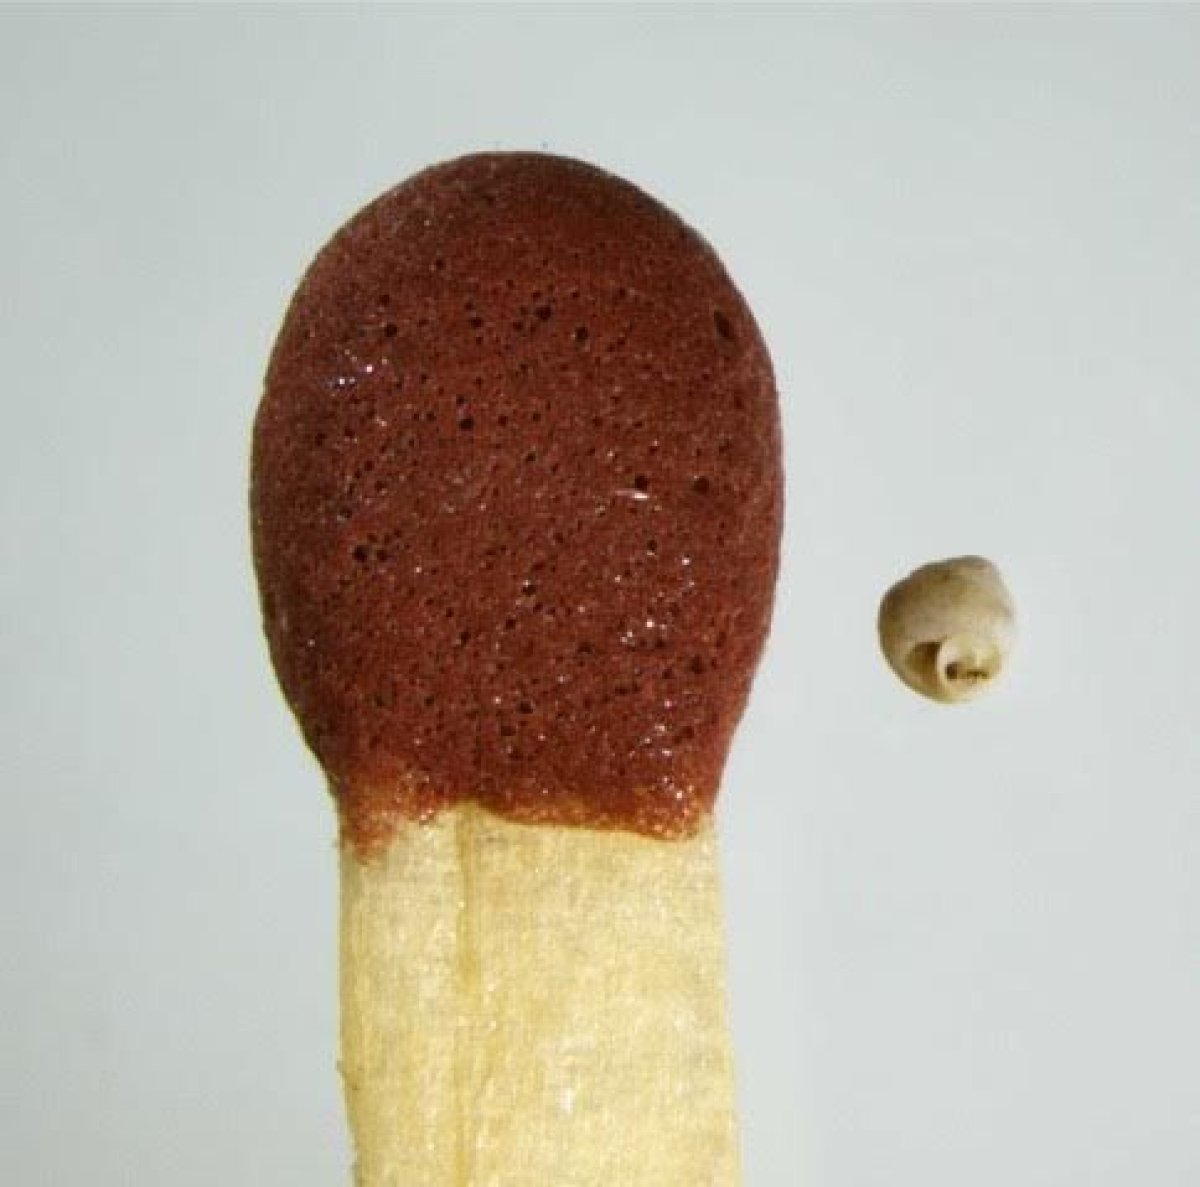 snail-match-head